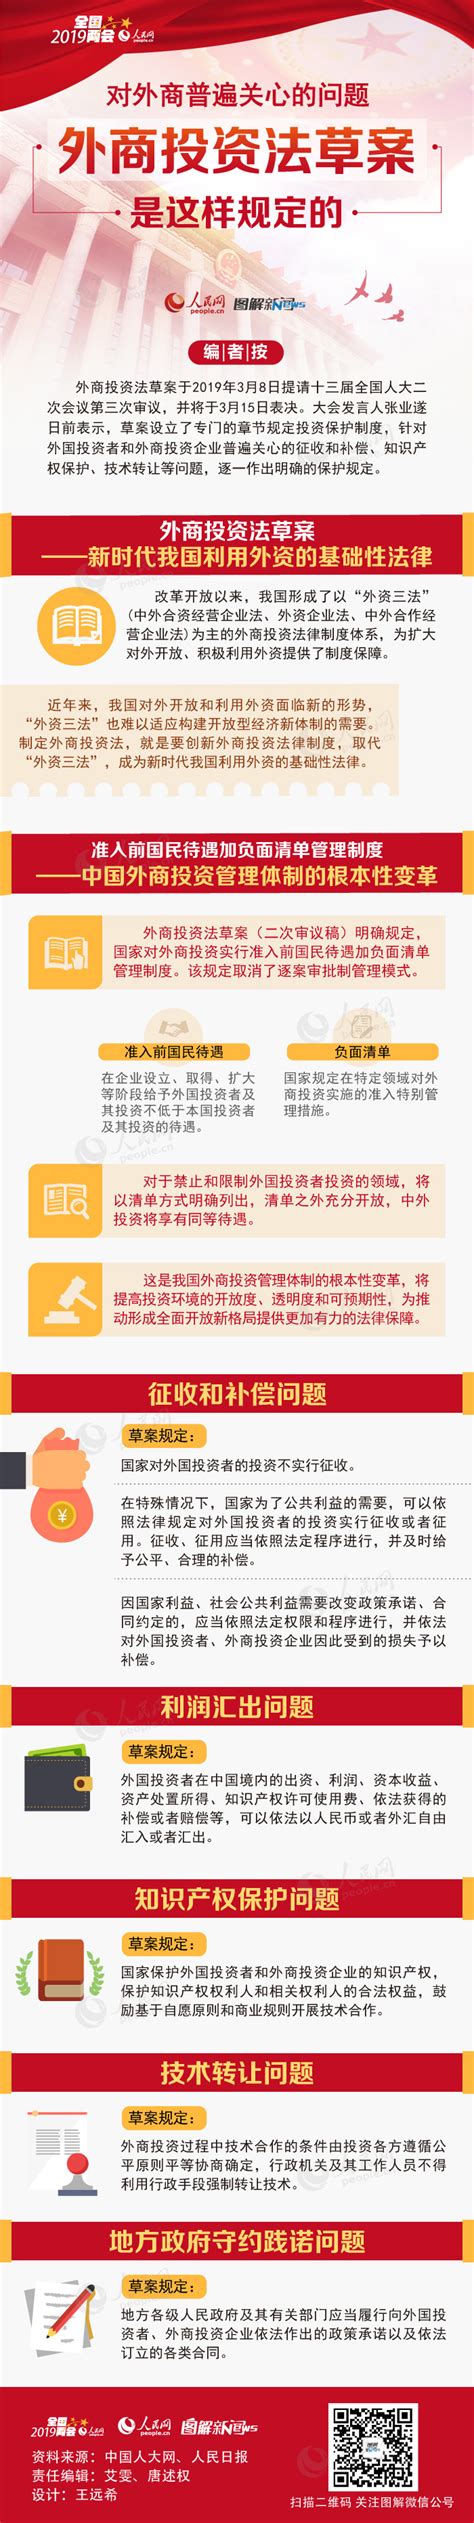 网友反映南昌“人才10条”排斥非全研究生，官方：请谅解 - 社会百态 - 华声新闻 - 华声在线